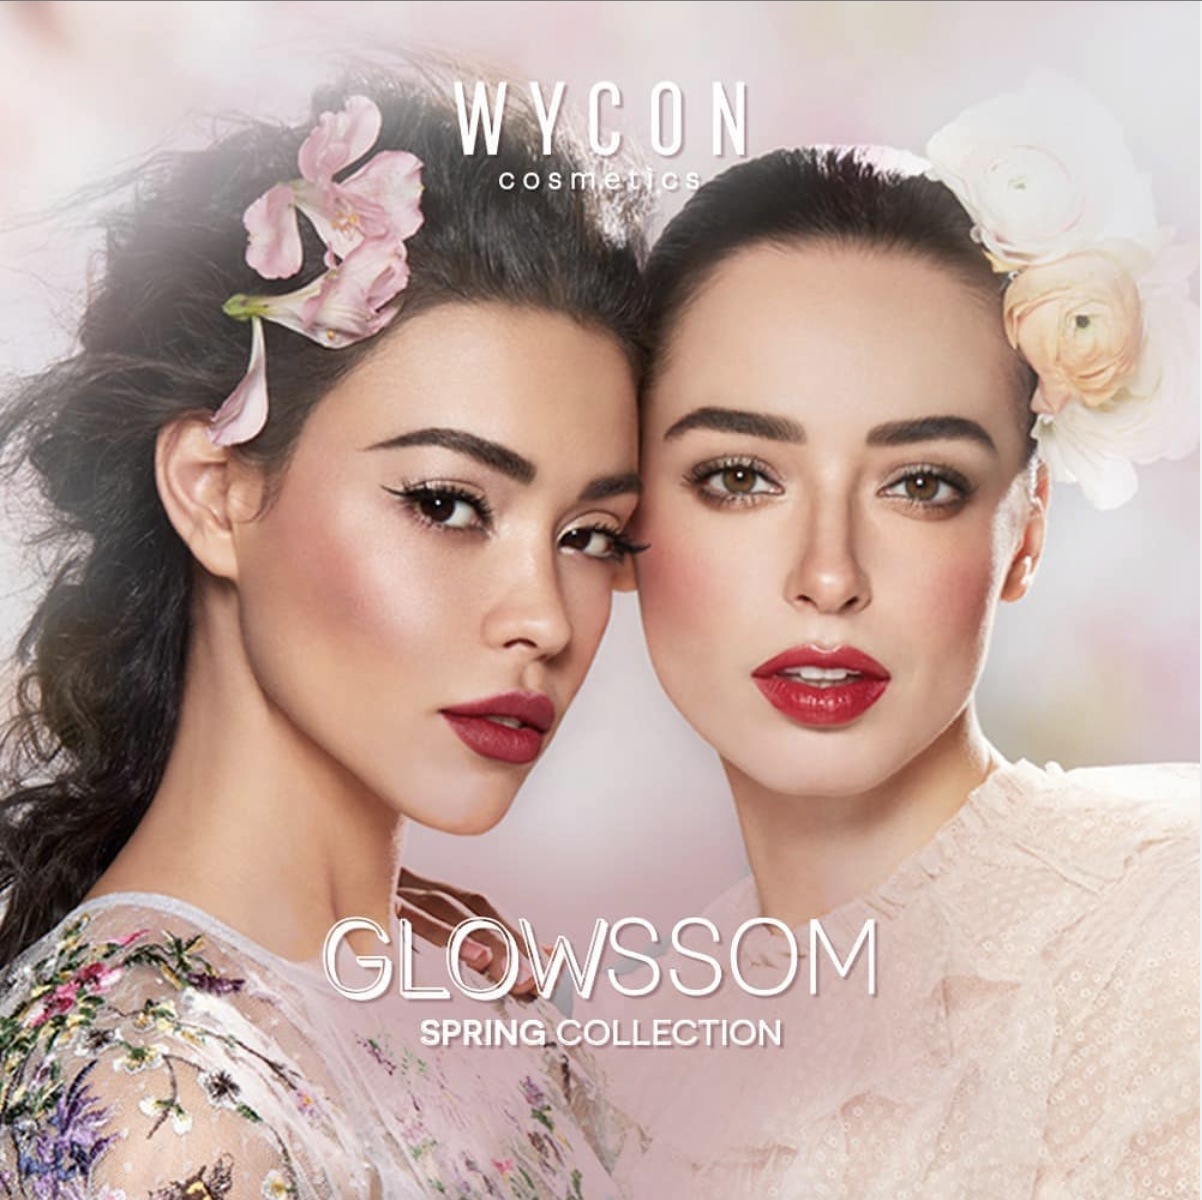 WYCON Glowssom